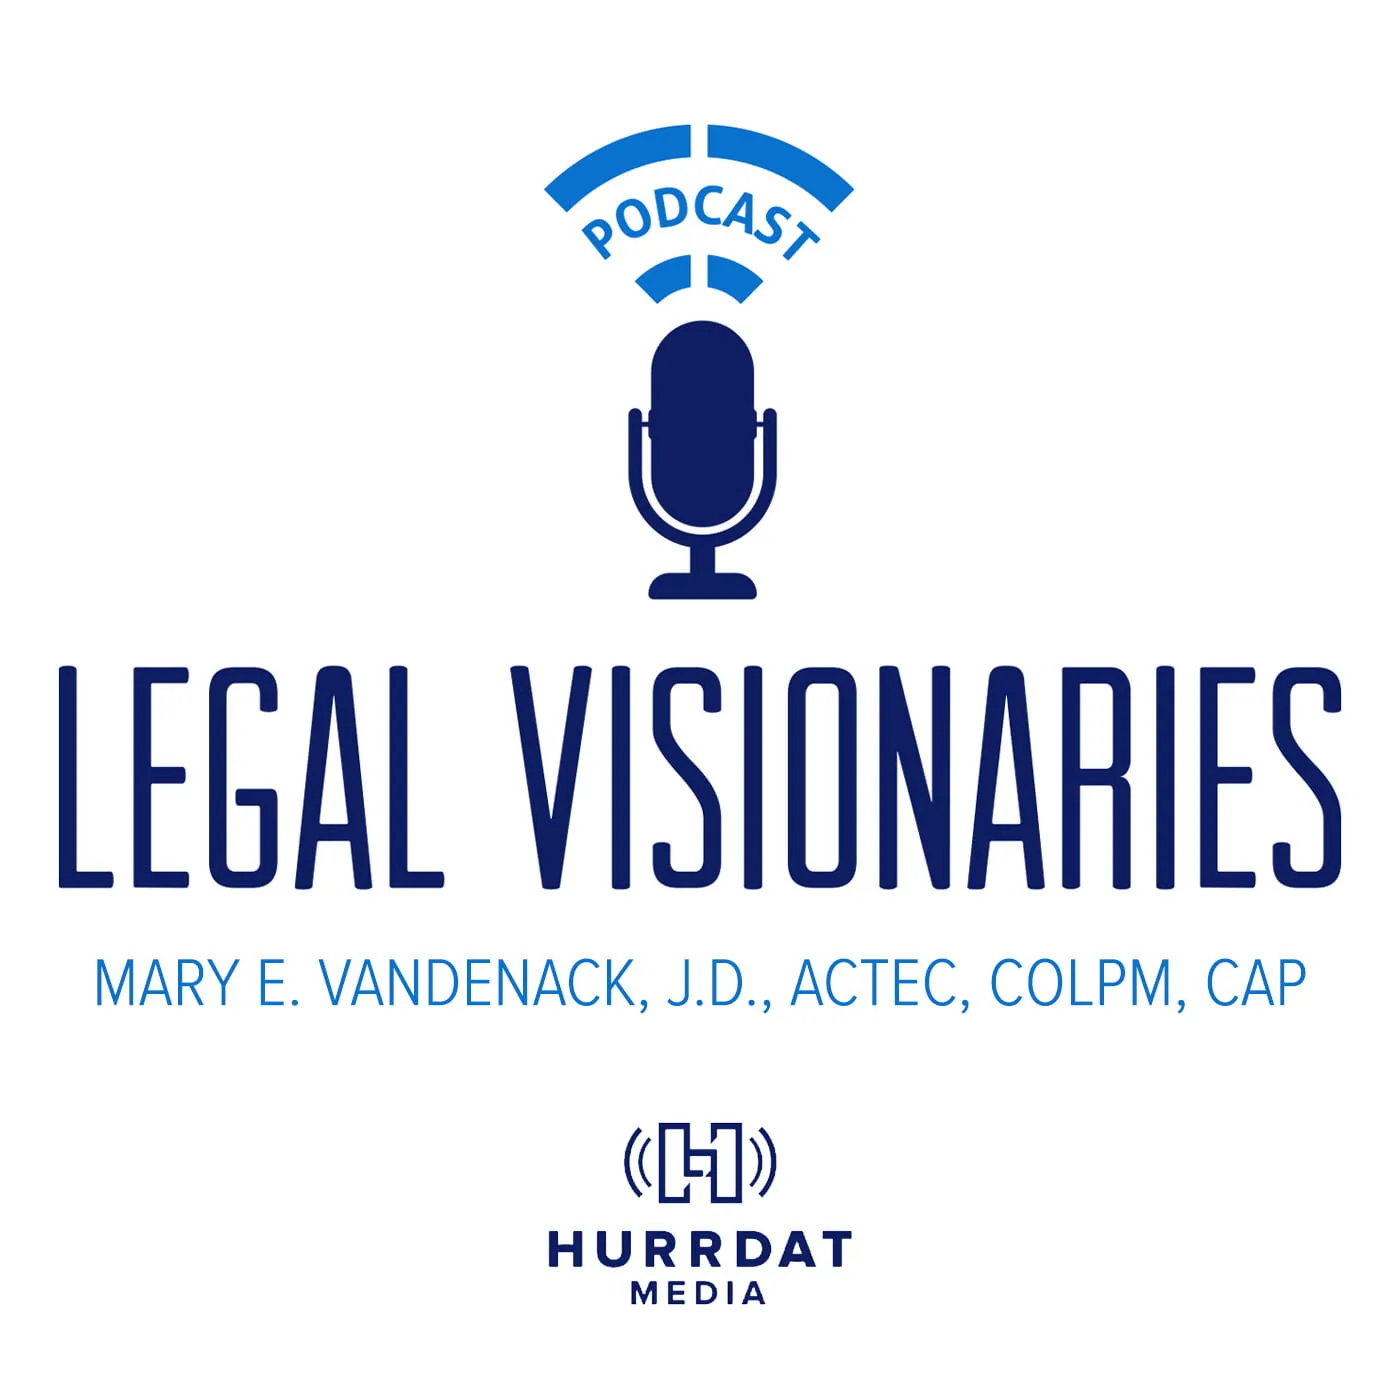 Legal Visionaries